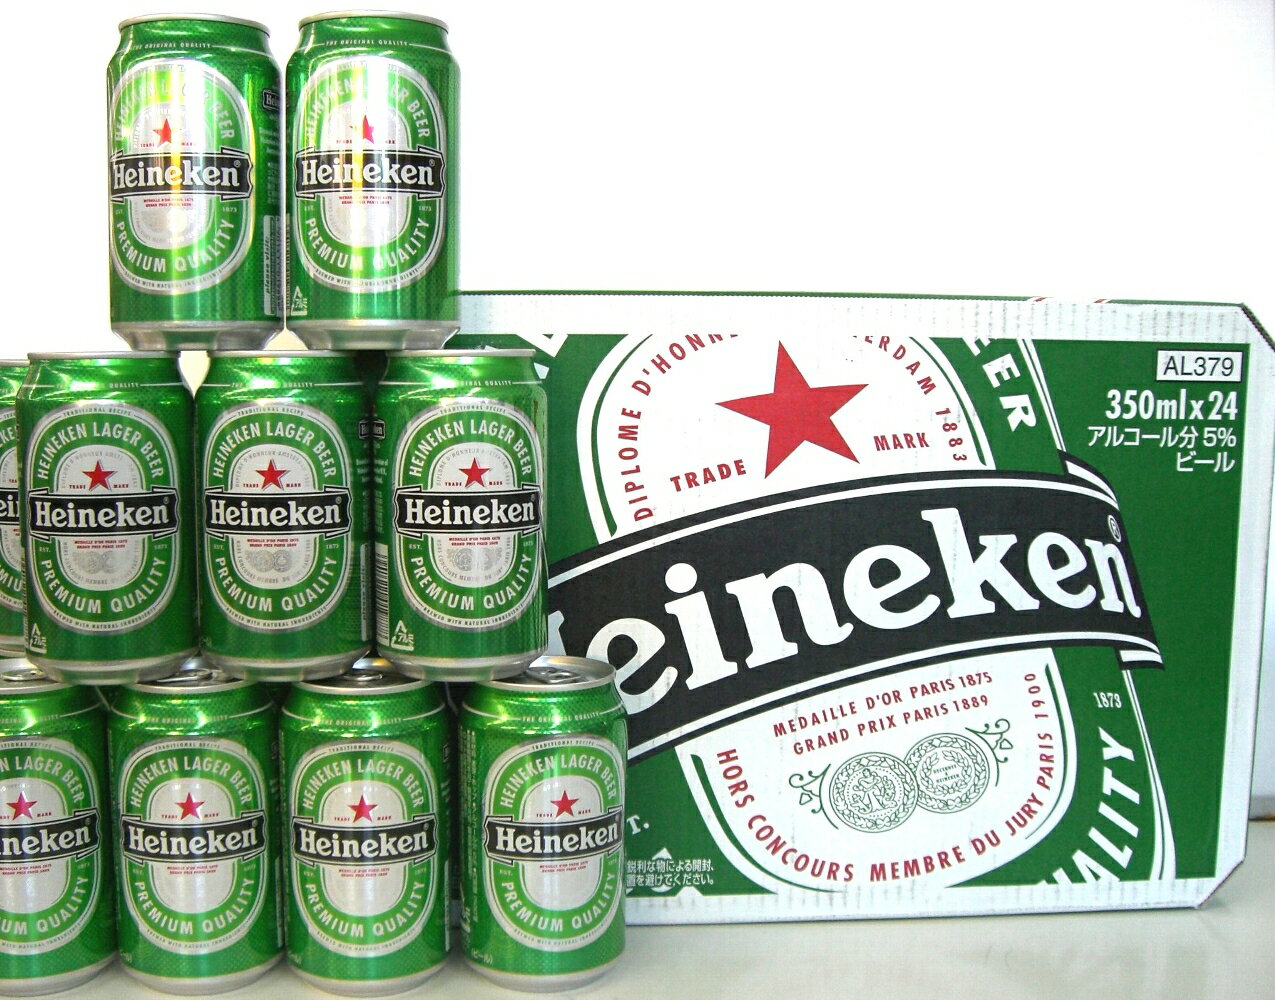 Heineken LAGAR BEER nClP 350ml~24{